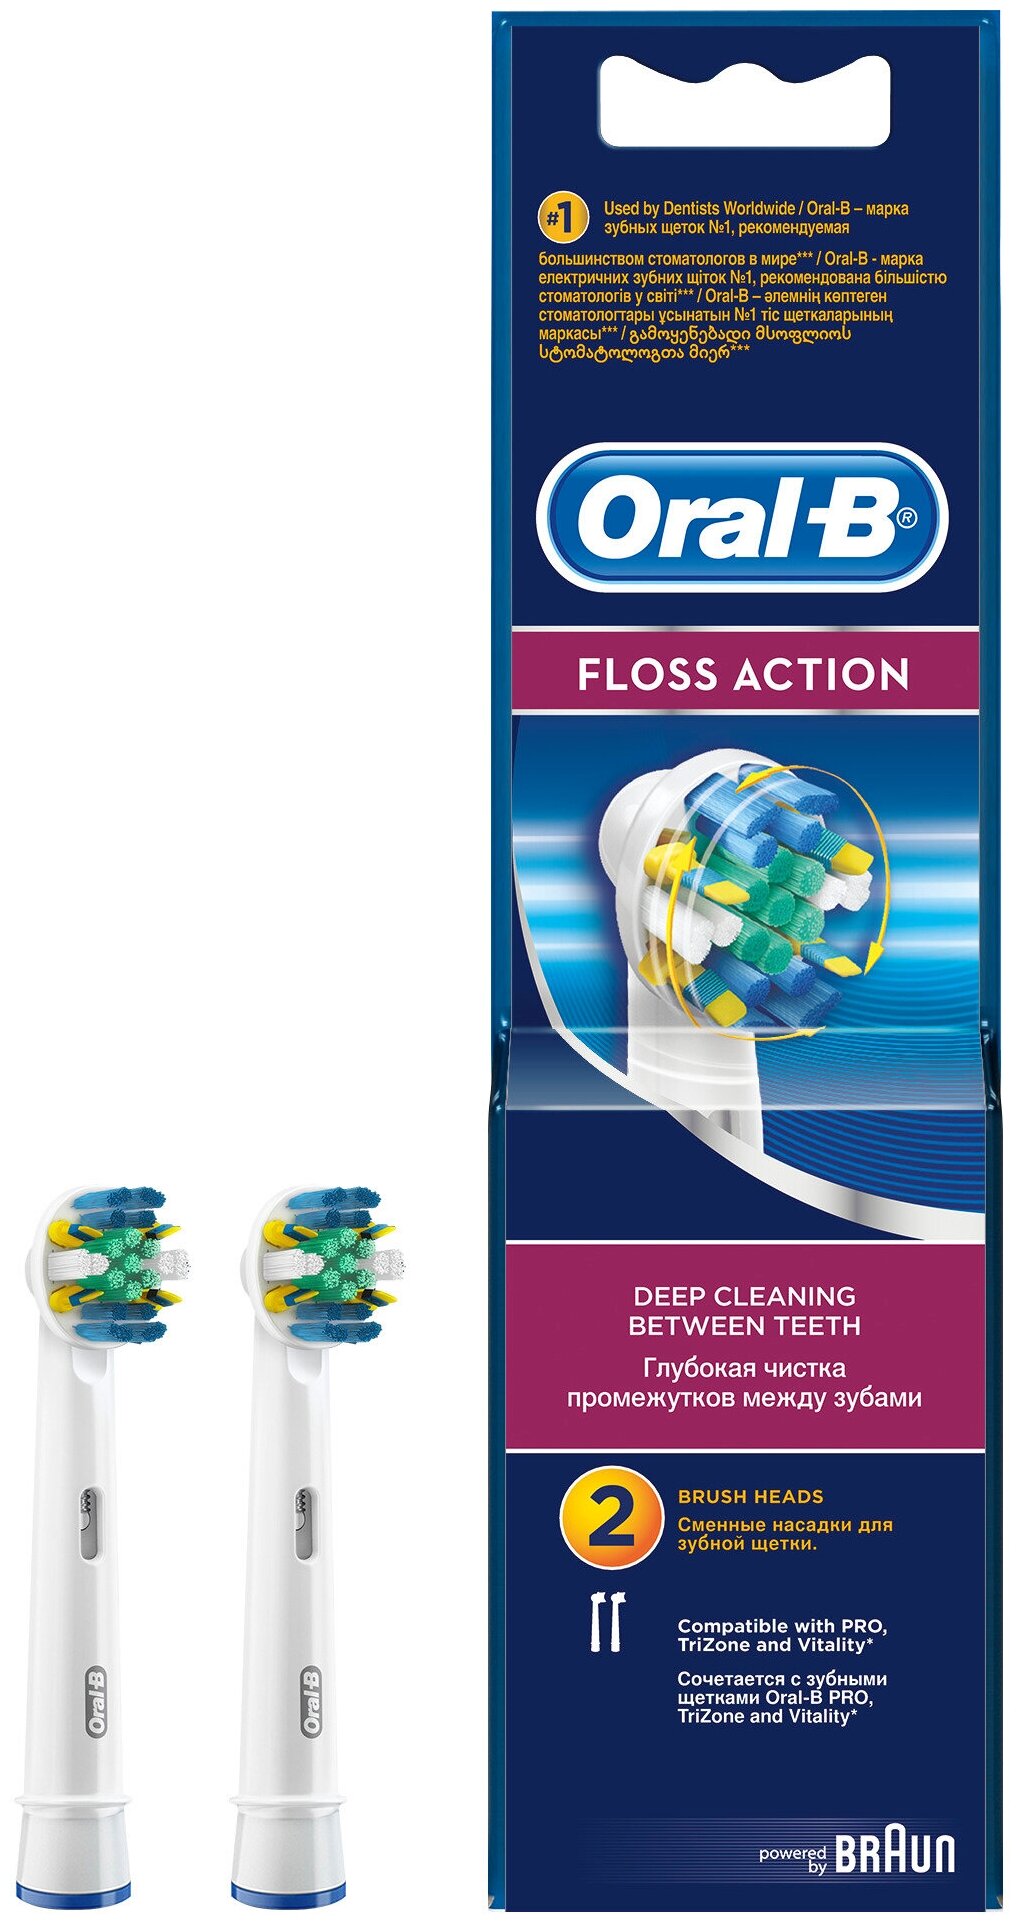 Набор насадок Oral-B Oral-B Cross Action EB 50-2, 3D White EB 18-2, Sensi Ultrathin EB 60-2 и Floss Action EB 25-2 для ирригатора и электрической щетки, белый, 8 шт. - фотография № 7